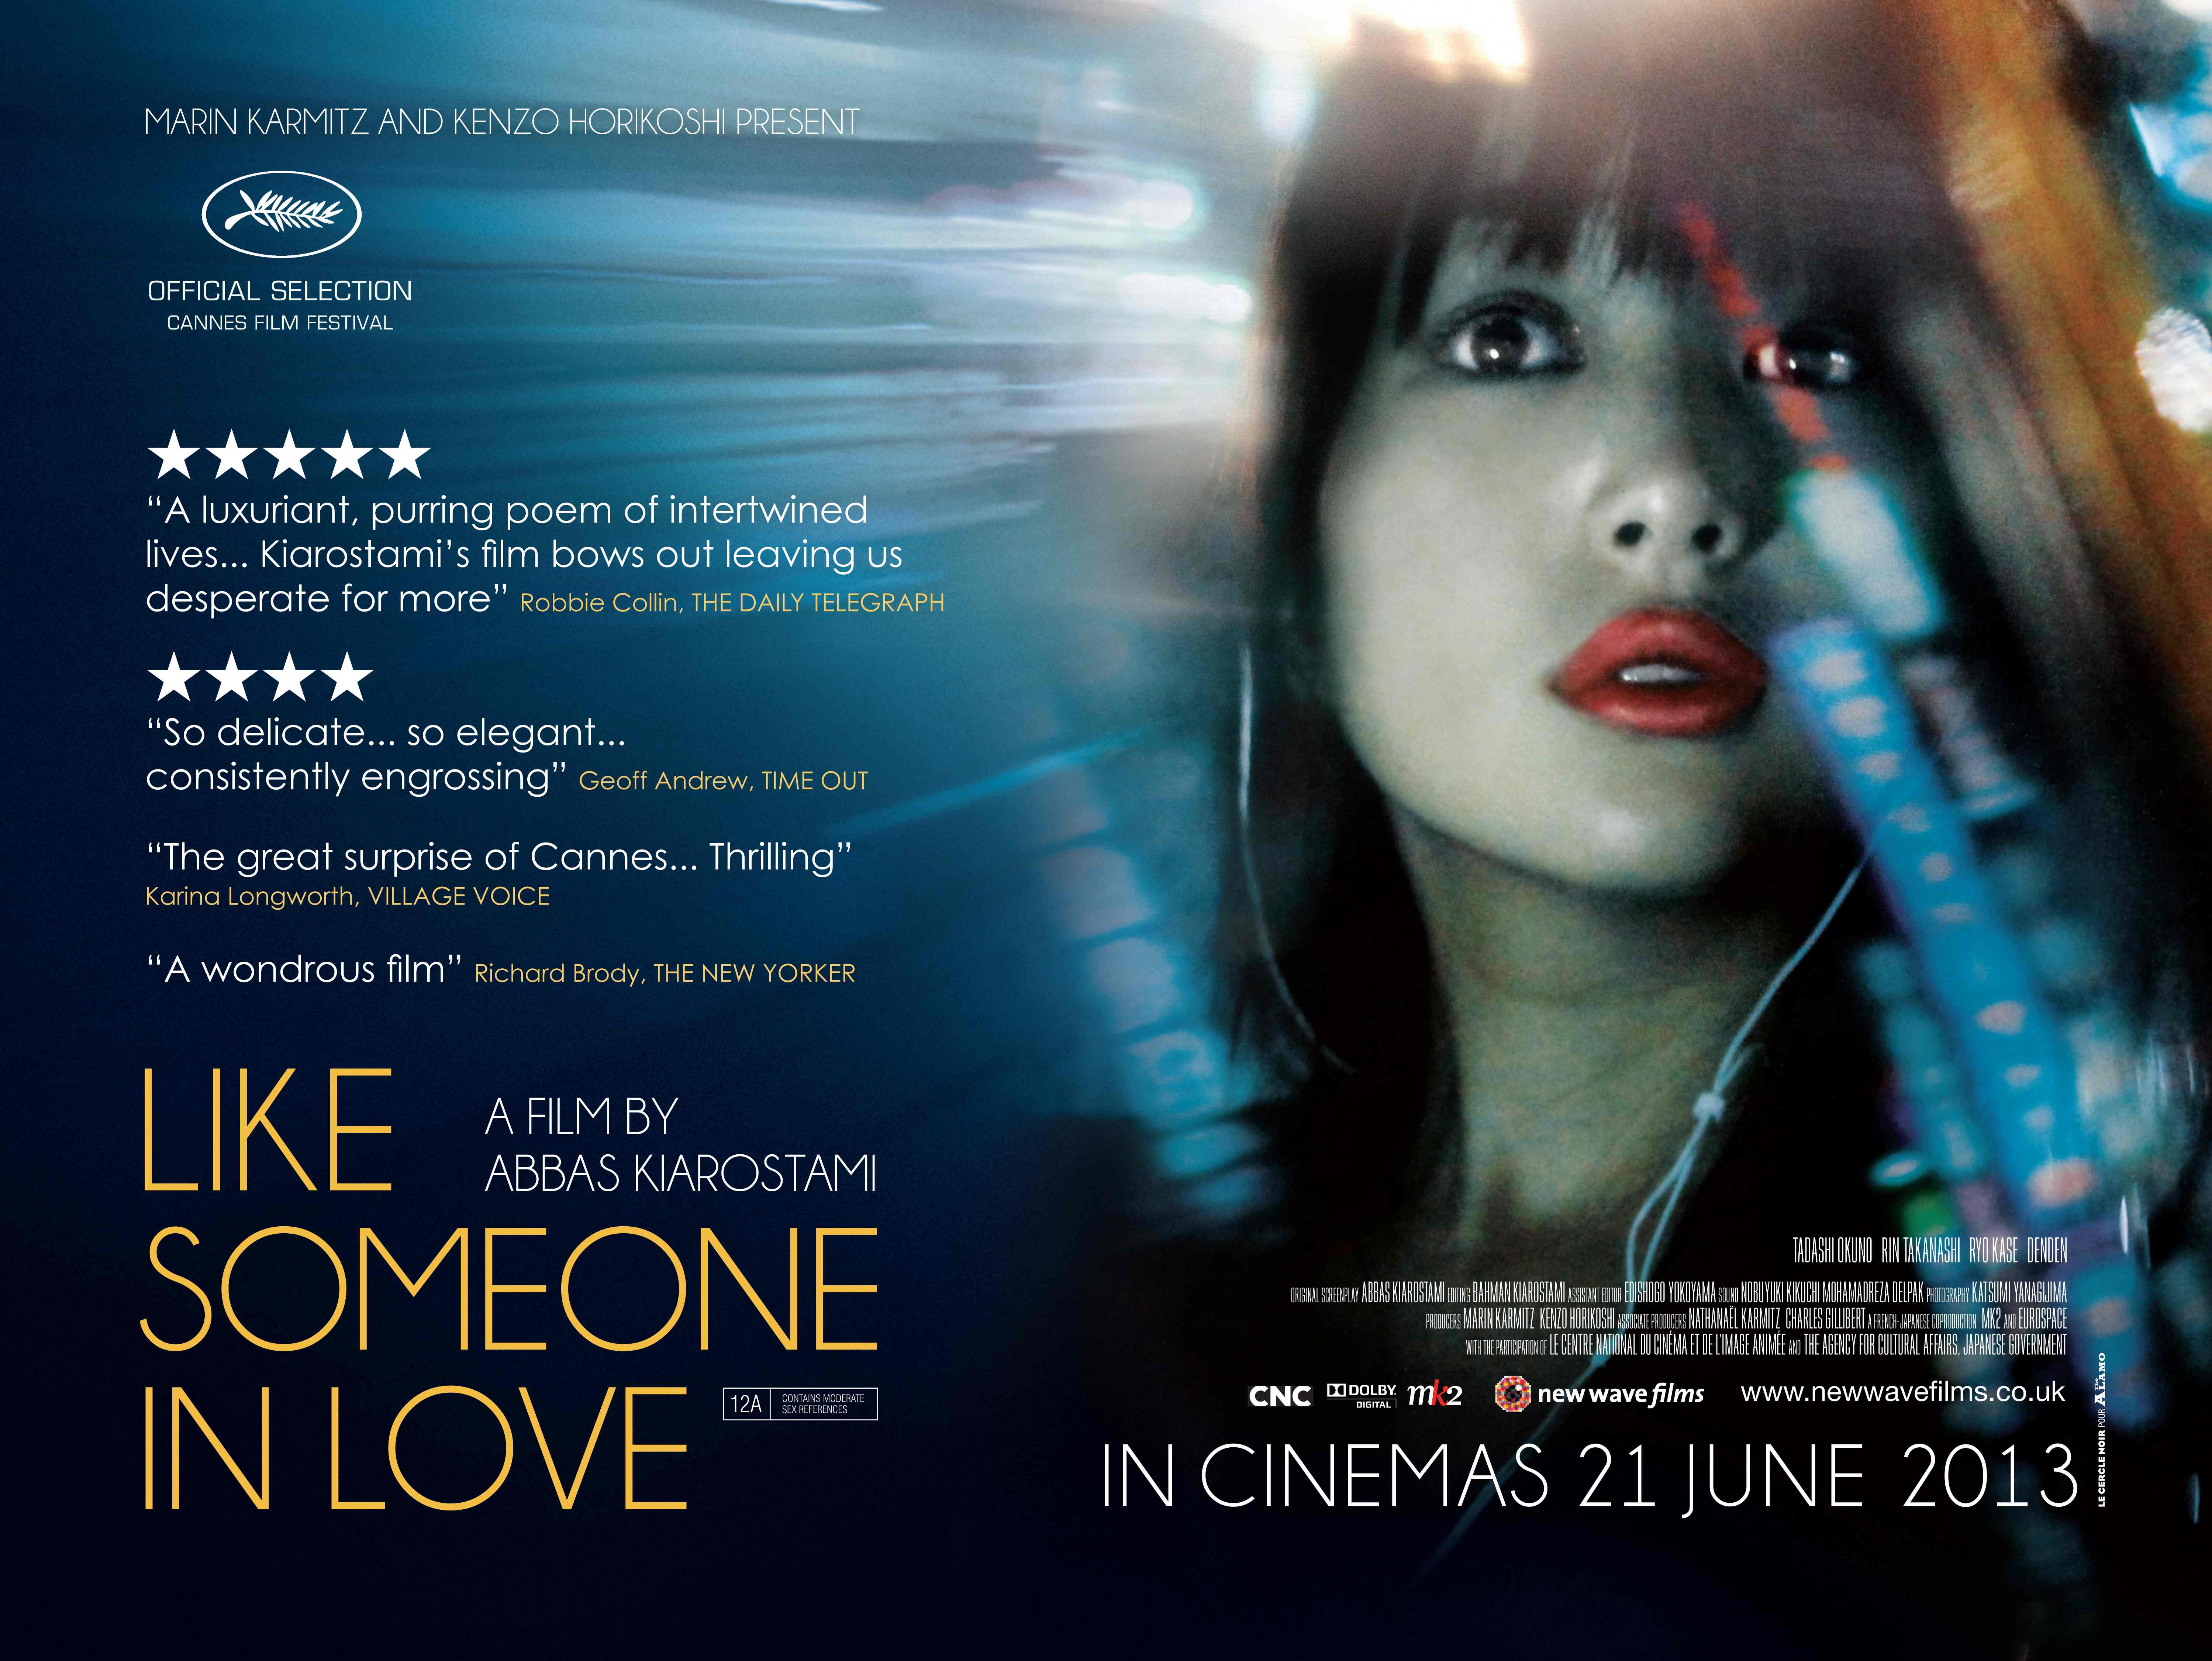 پوستر فیلم سینمایی مثل یک عاشق به کارگردانی عباس کیارستمی